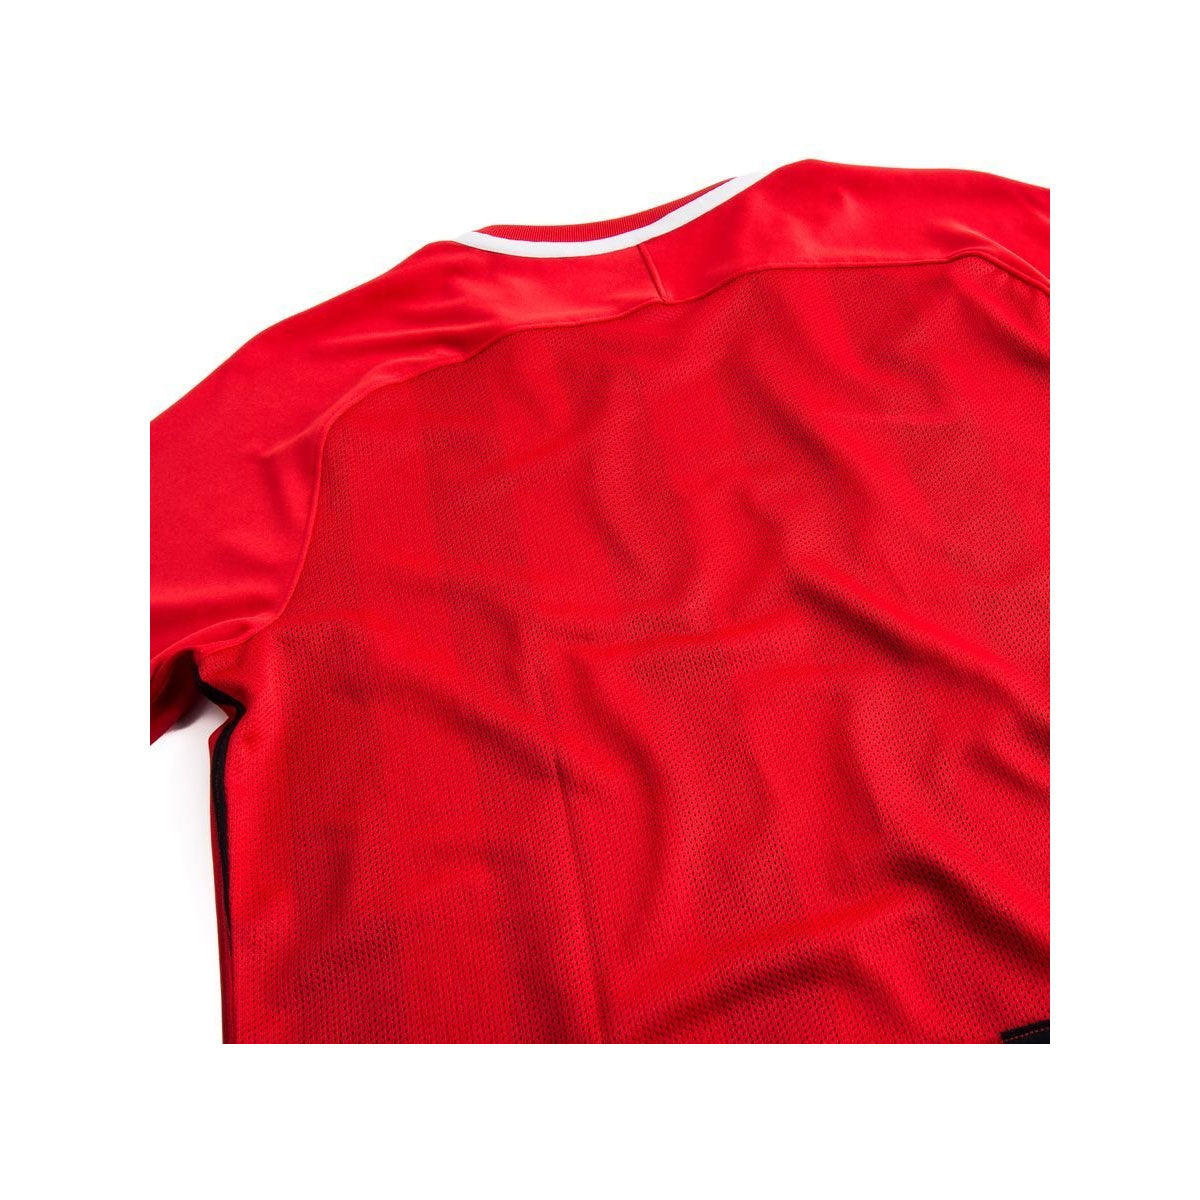 Nike Men's Division III Jr T-Shirt